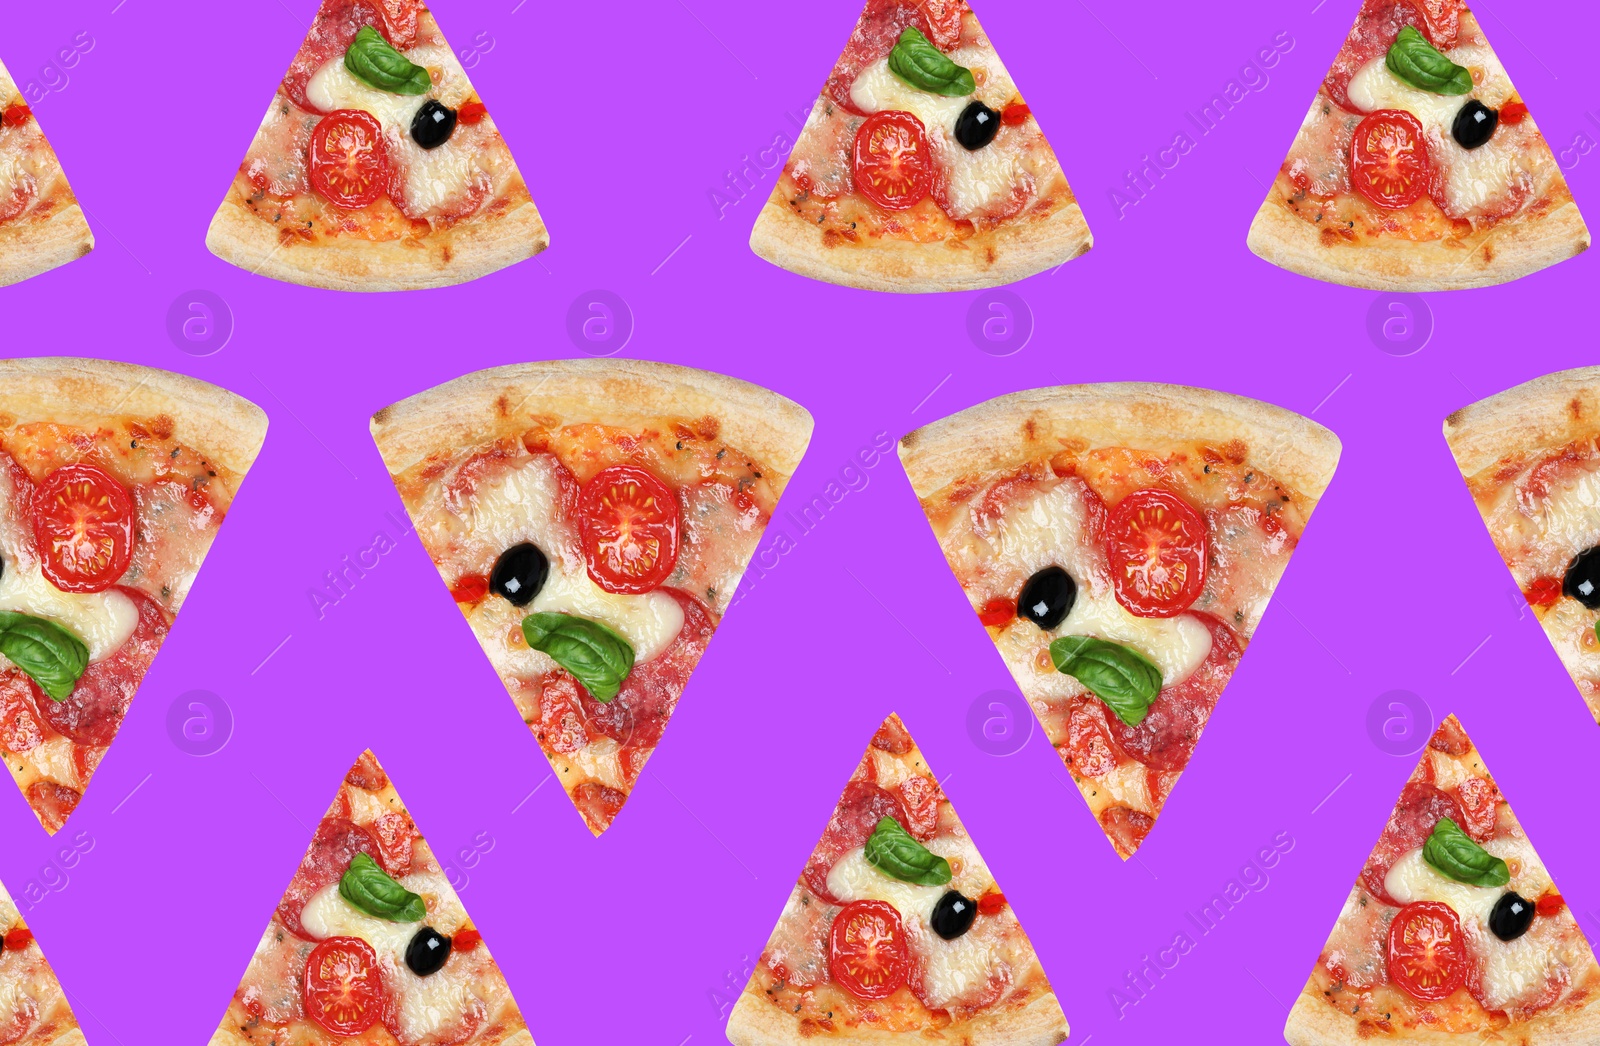 Image of Pizza slices on violet background. Pattern design